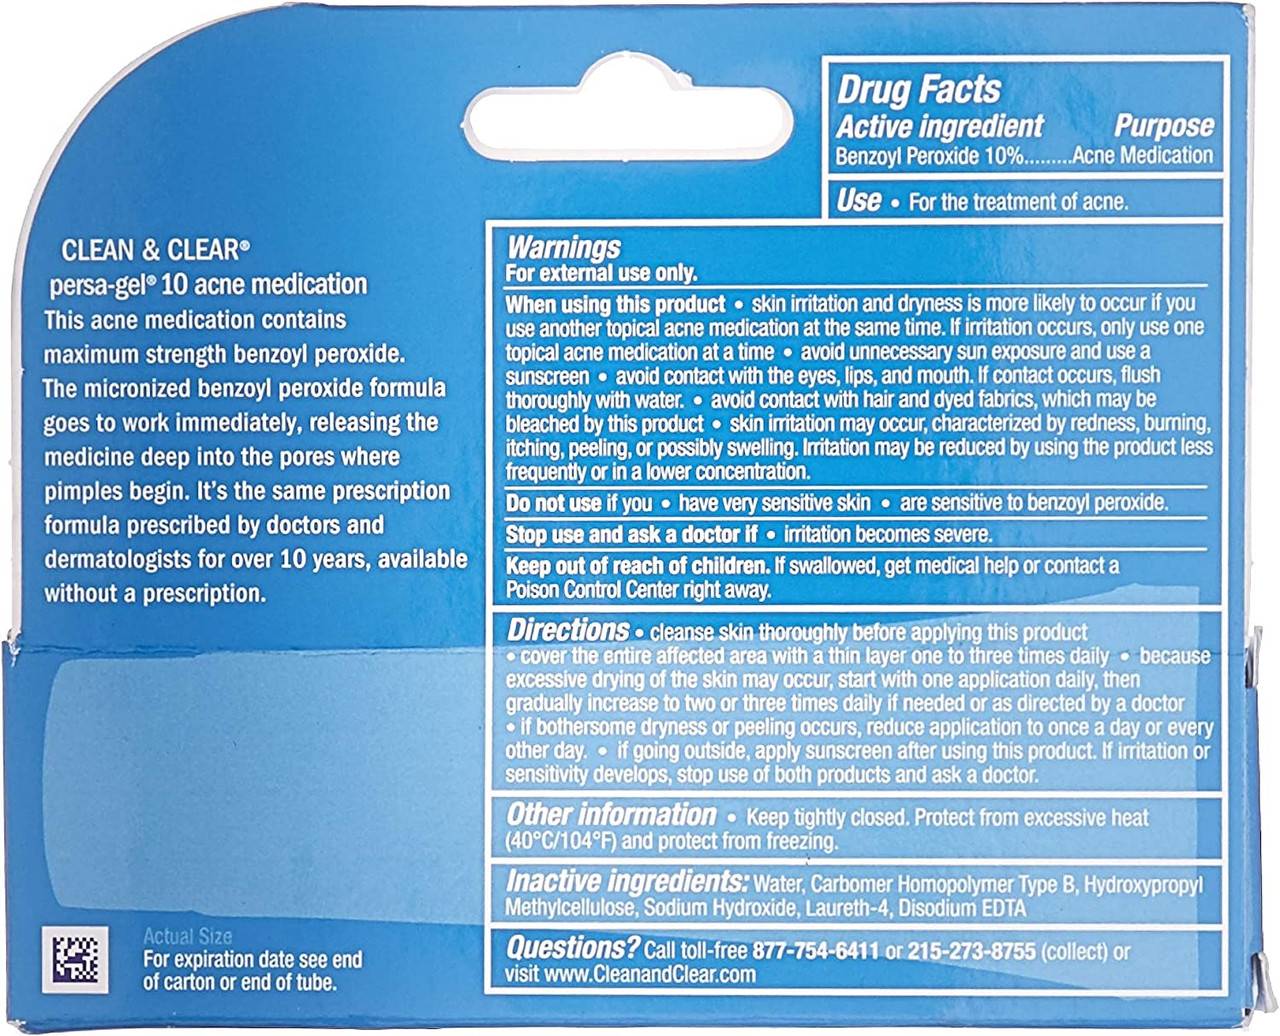 Clean & Clear Blackhead Eraser Facial Scrub with Salicylic Acid - 7oz